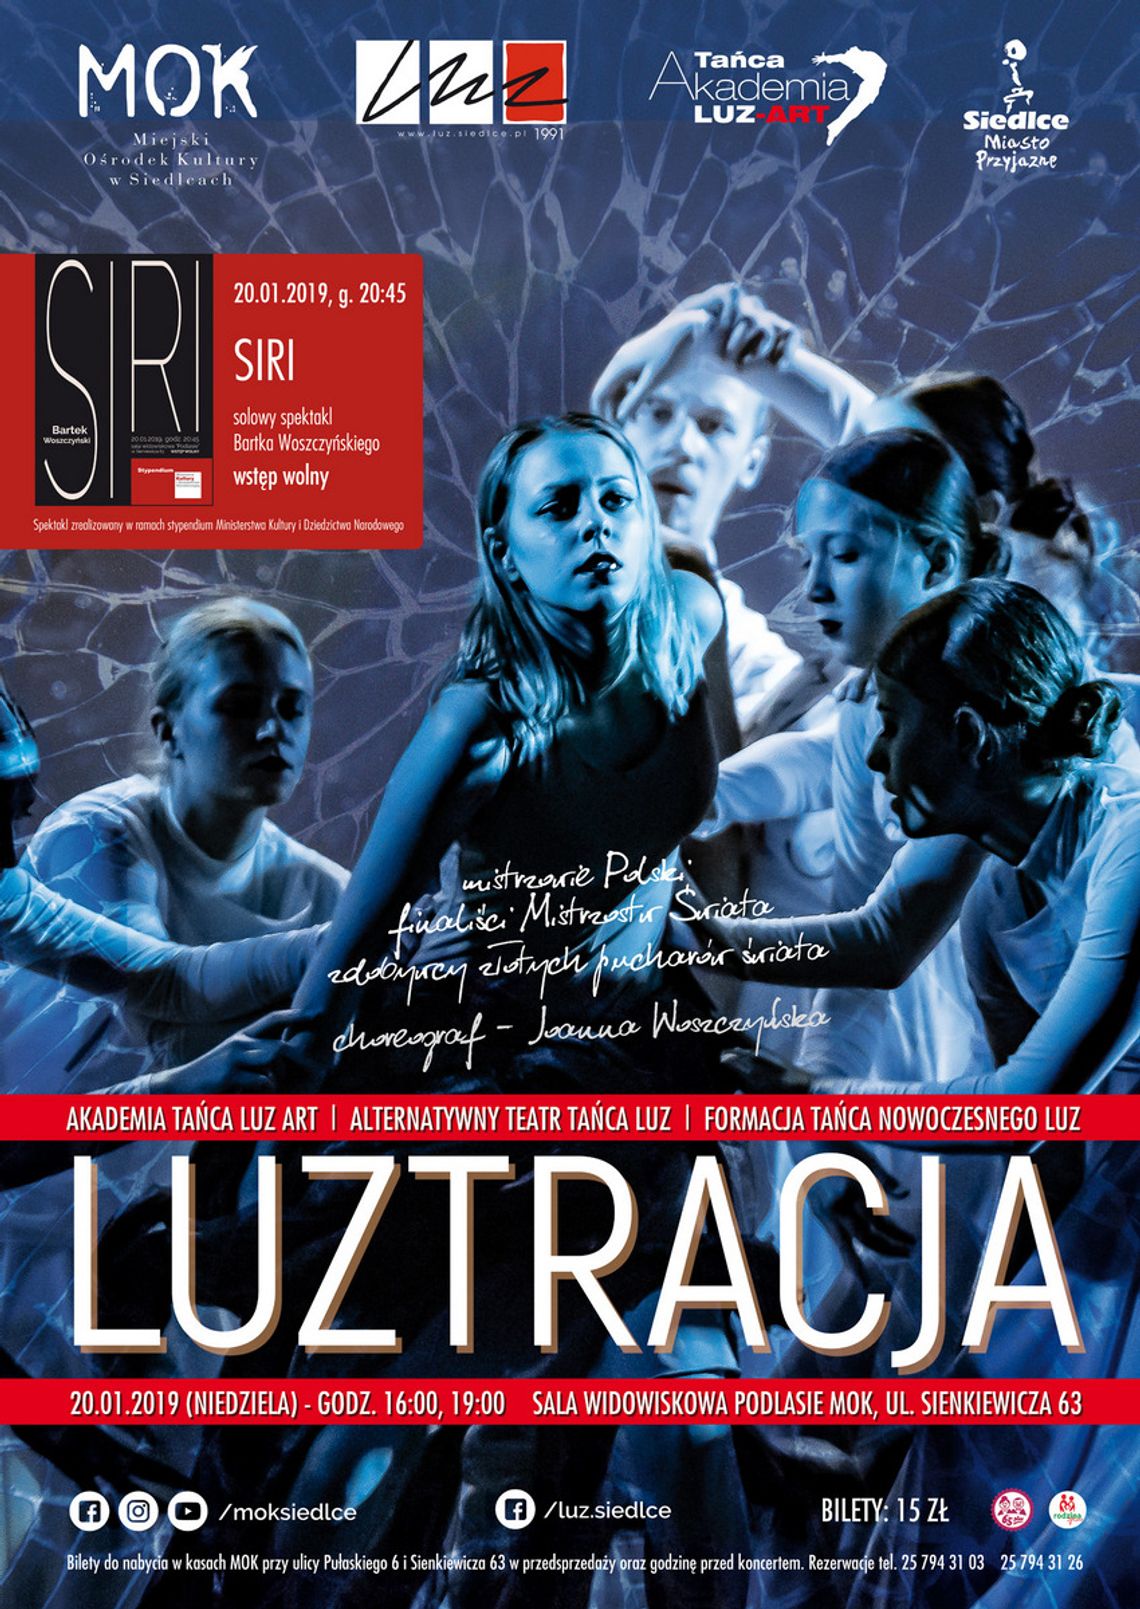 Koncerty Formacji Tańca Nowoczesnego LUZ, Alternatywnego Teatru Tańca LUZ i Akademii Tańca LUZ ART